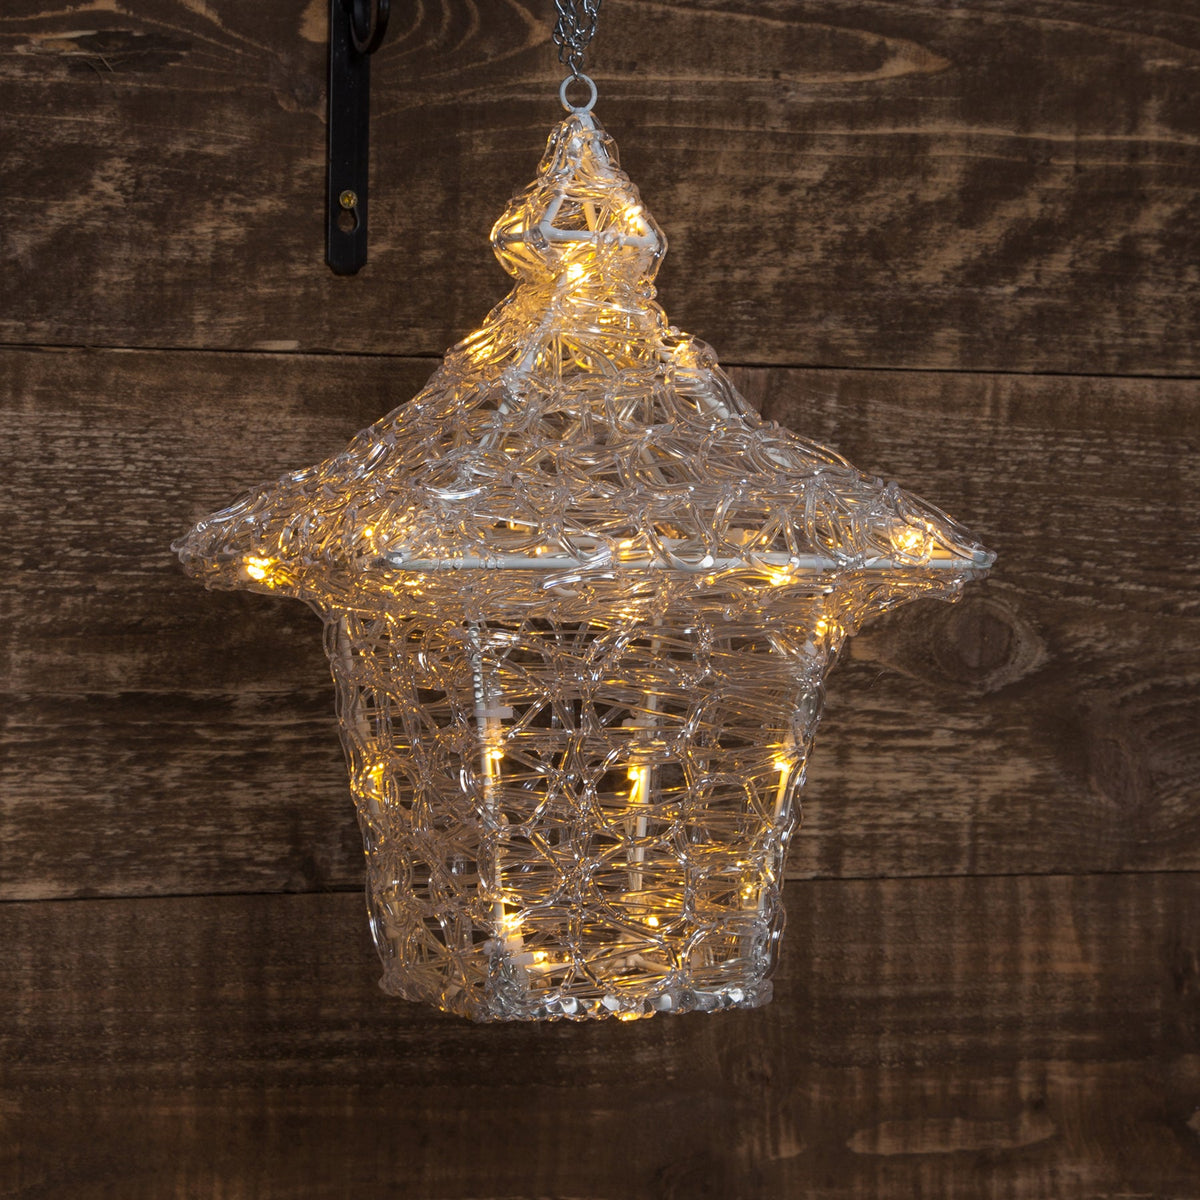 35cm Acrylic Hanging Lantern with 40 Warm White LED Lights